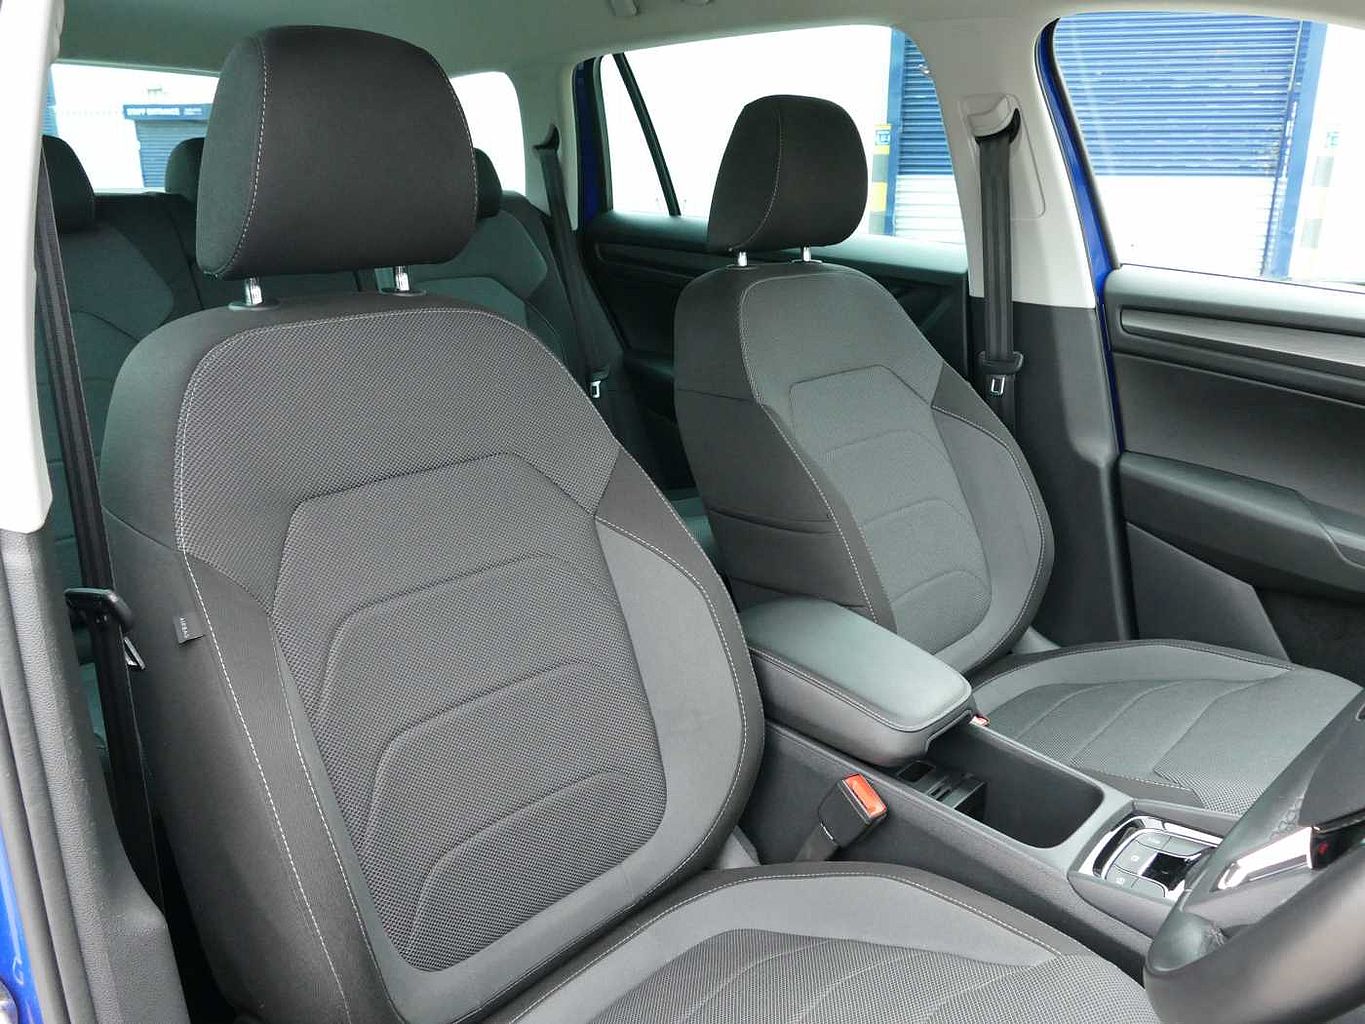 SKODA Kodiaq 2.0 TDI 150ps 4X4 SE (5 seats) DSG Automatic SUV